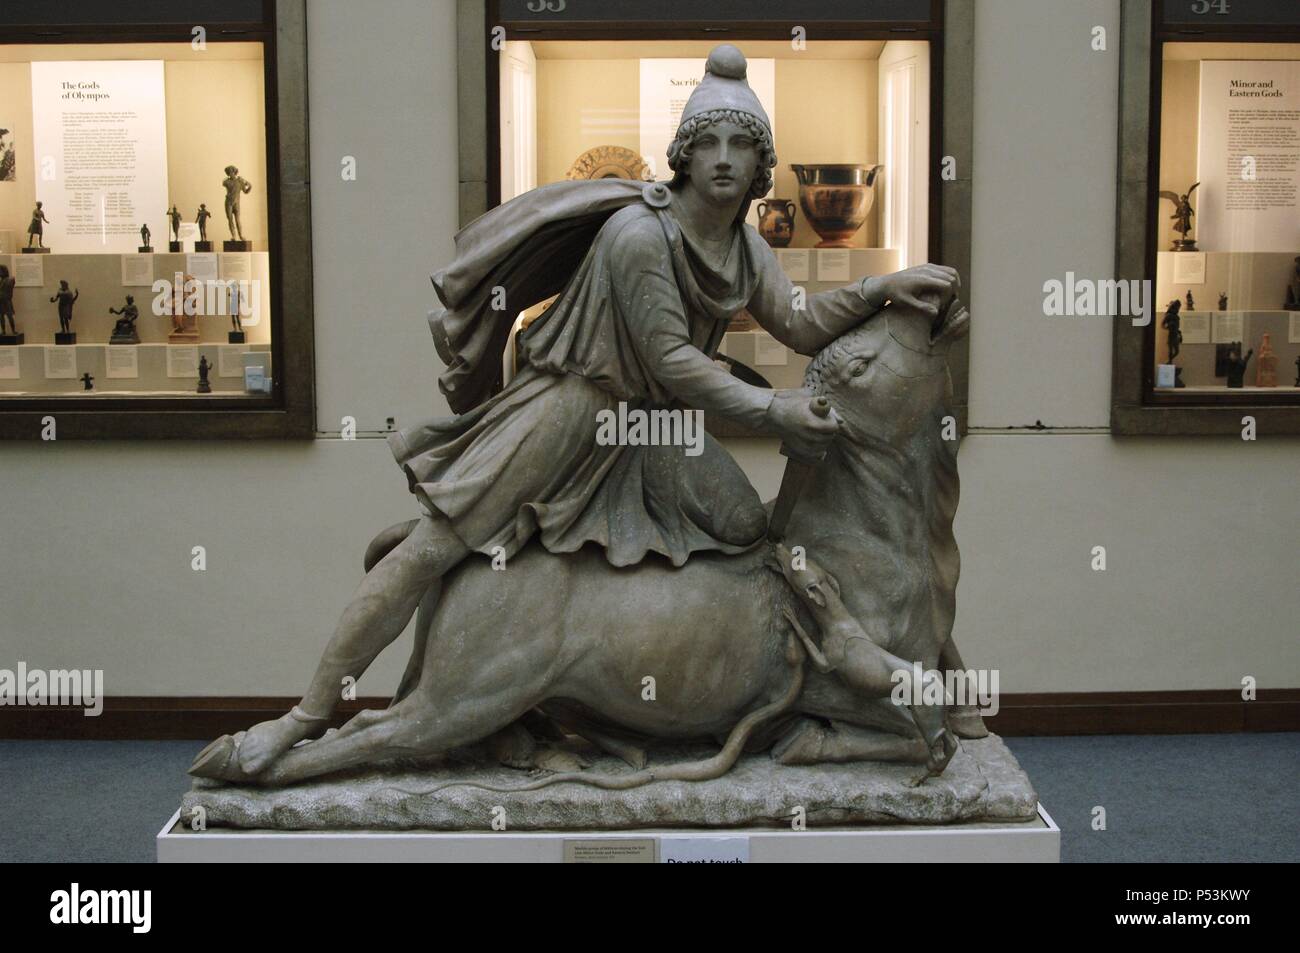 Mitra tauroctonos. Statua romana. Il marmo. 2° secolo. British Museum. Londra. In Inghilterra. Regno Unito. Foto Stock